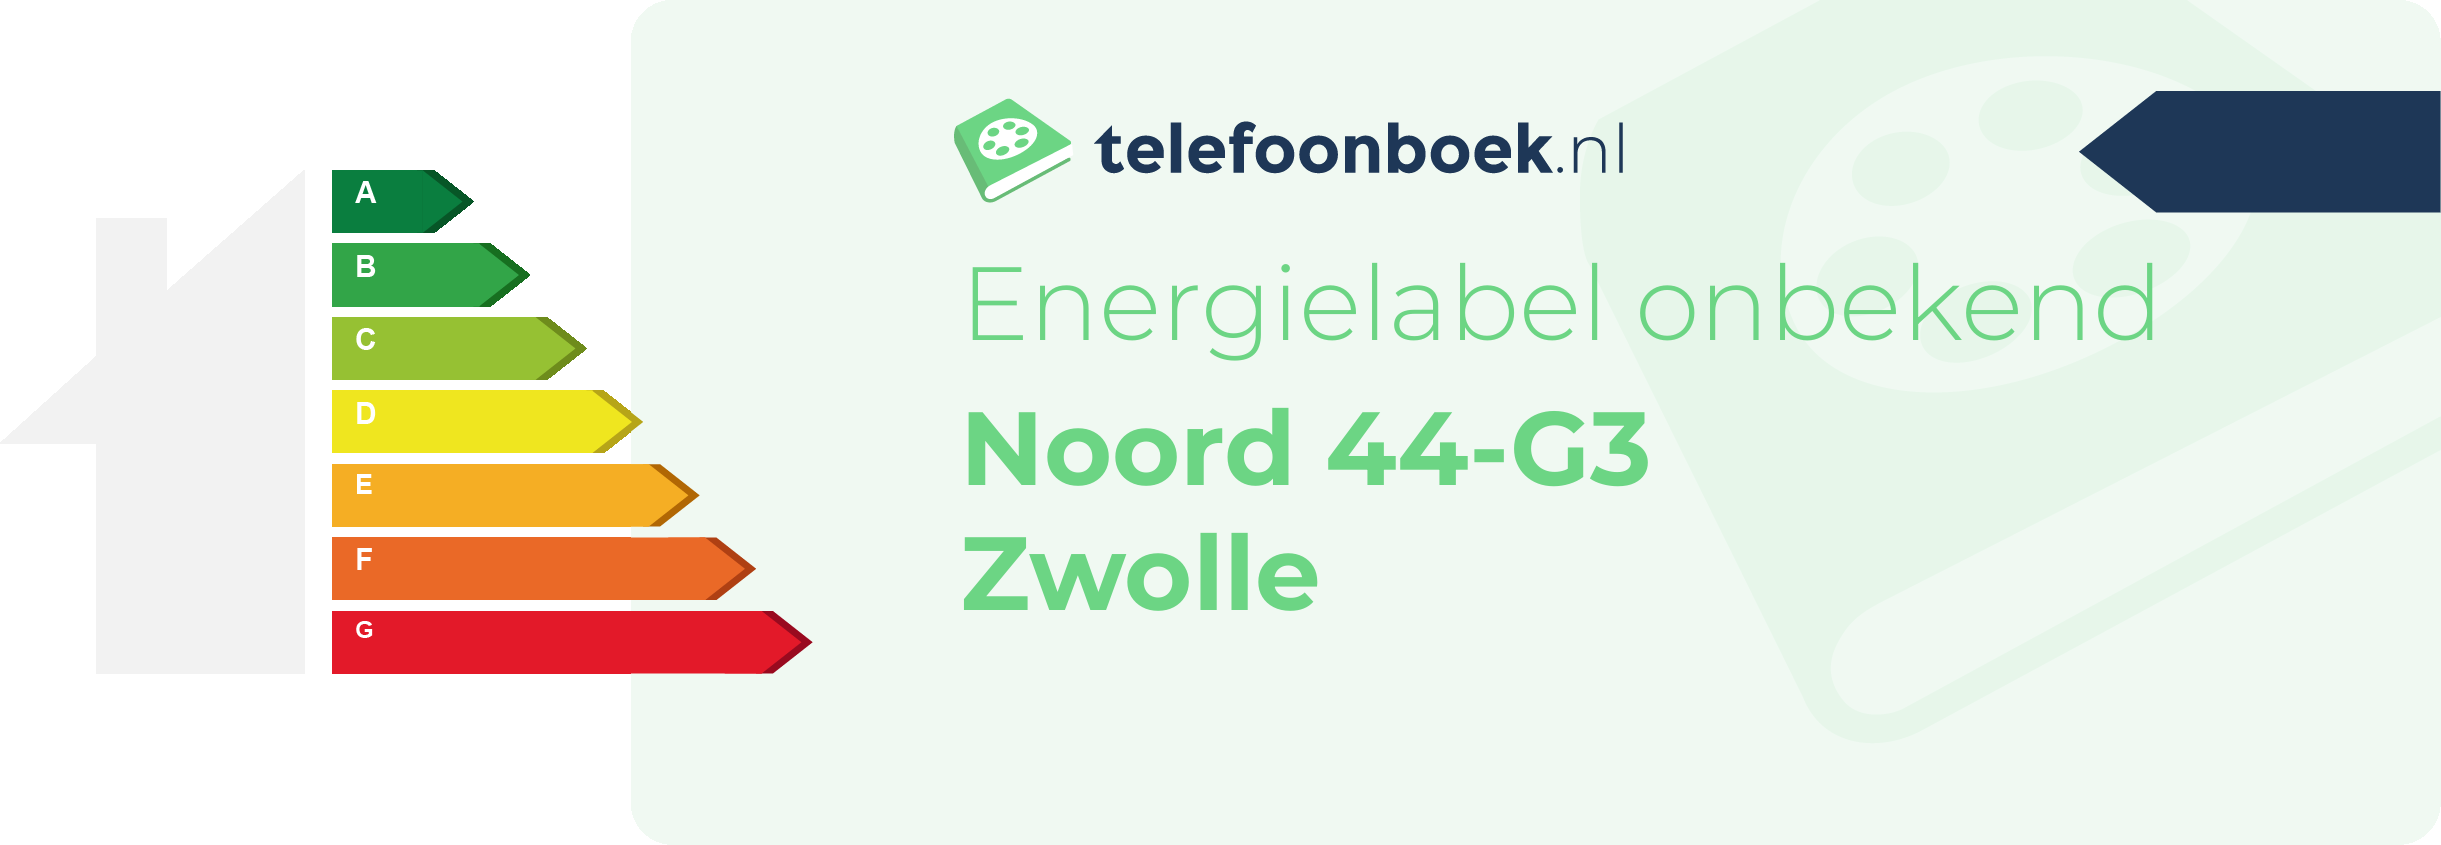 Energielabel Noord 44-G3 Zwolle